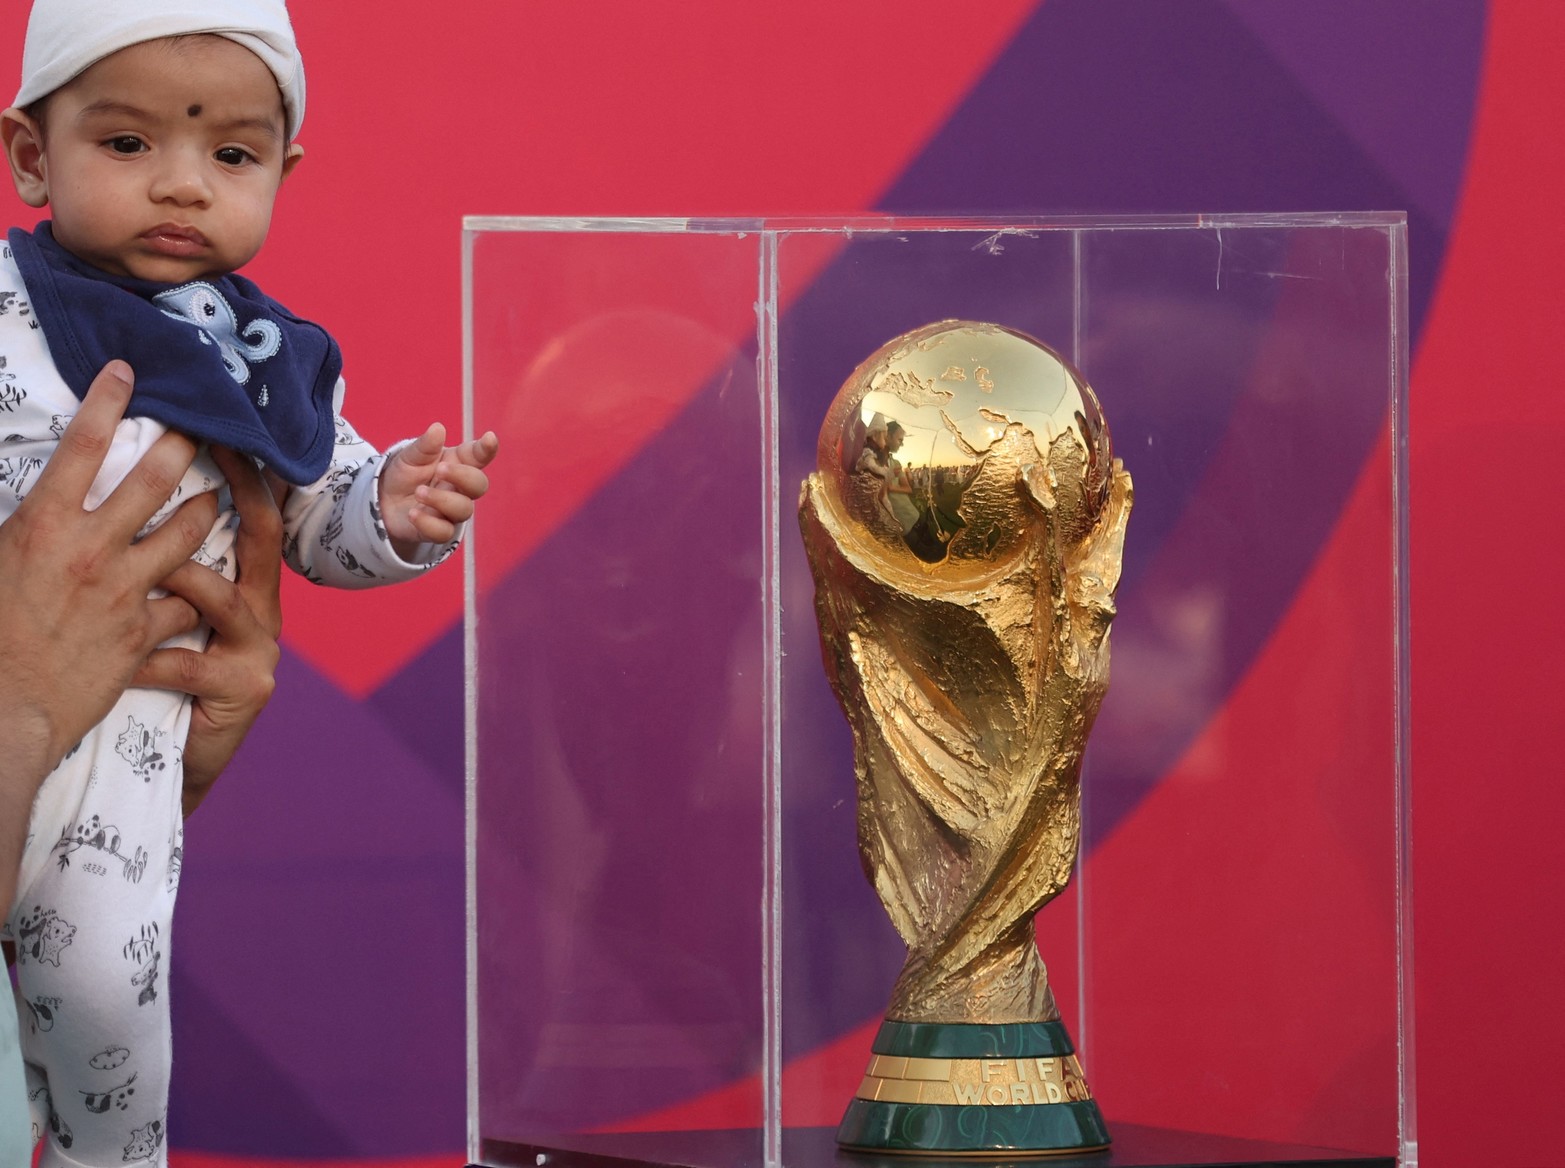 El trofeo de la Copa Mundial se exhibe en Aspire Park - Doha, Qatar. Un bebé mira el trofeo de la Copa Mundial en exhibición durante el evento.